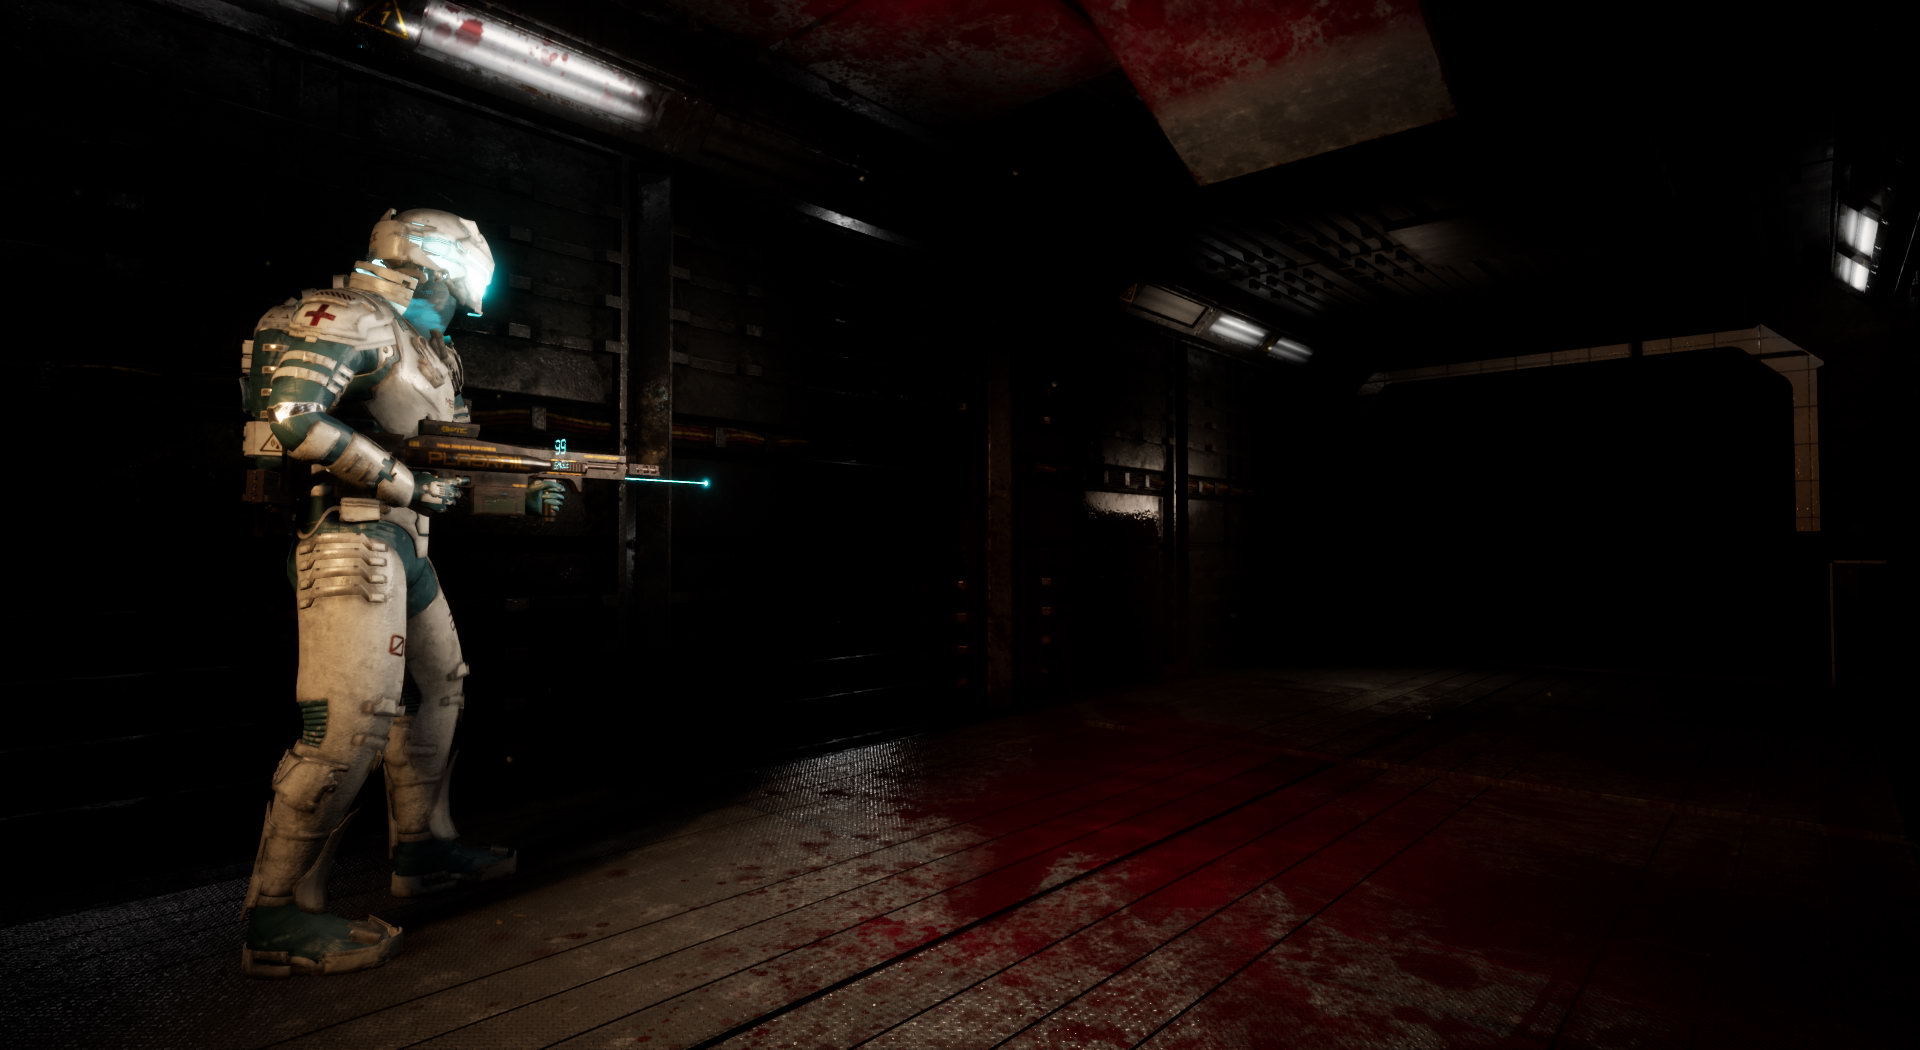 恐怖游戏《消极氛围》预告及截图 灵感源于死亡空间